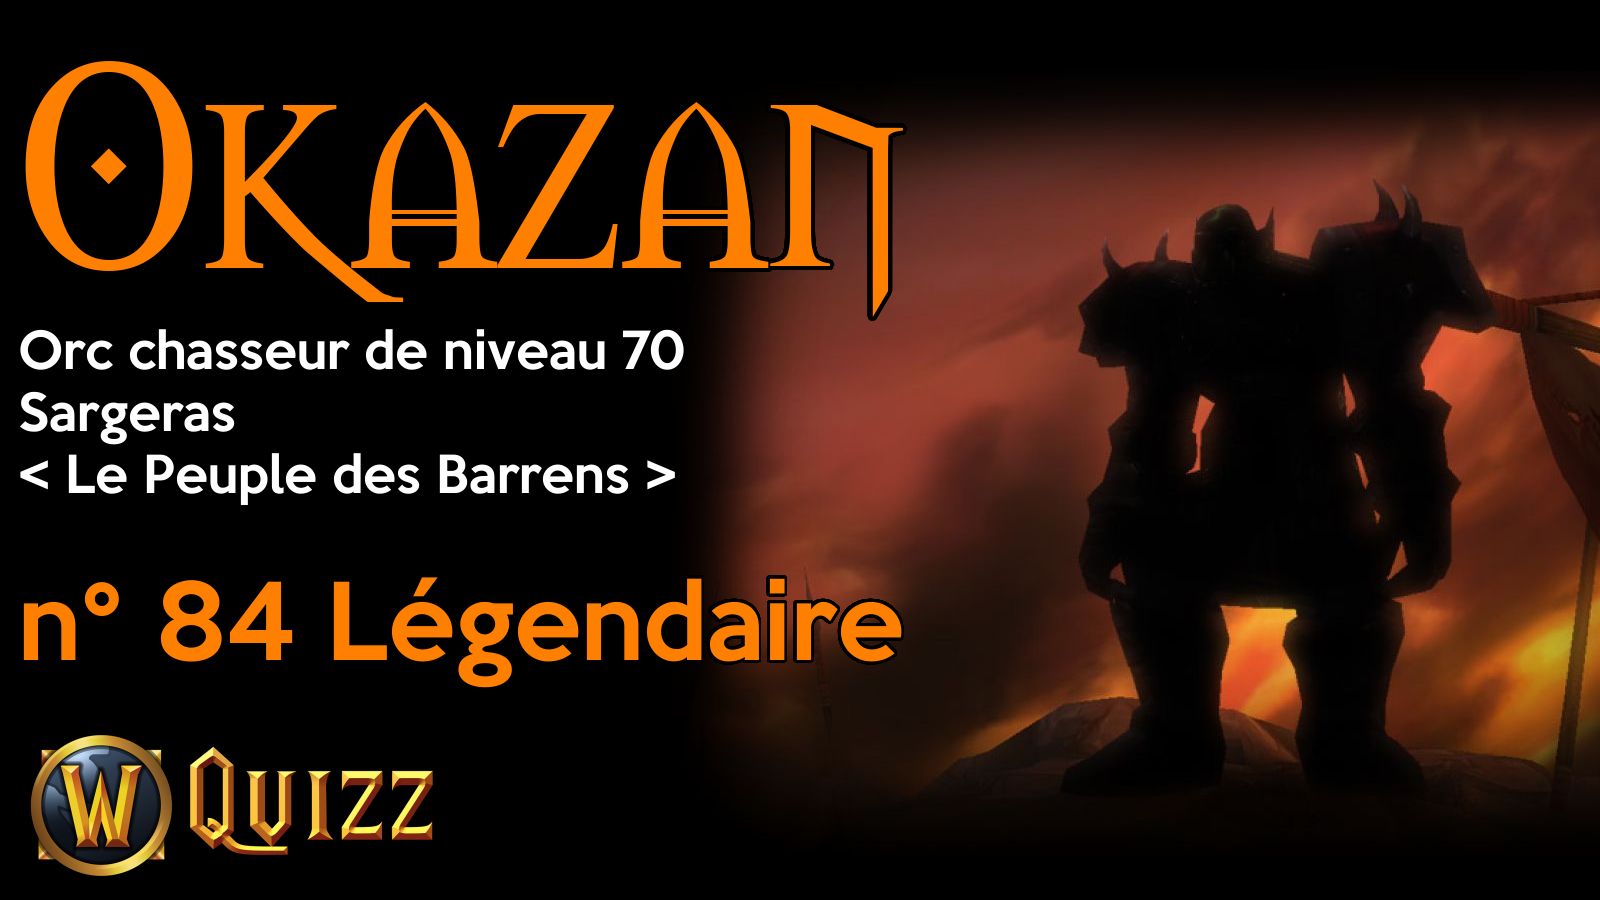 Okazan, Orc chasseur de niveau 70, Sargeras